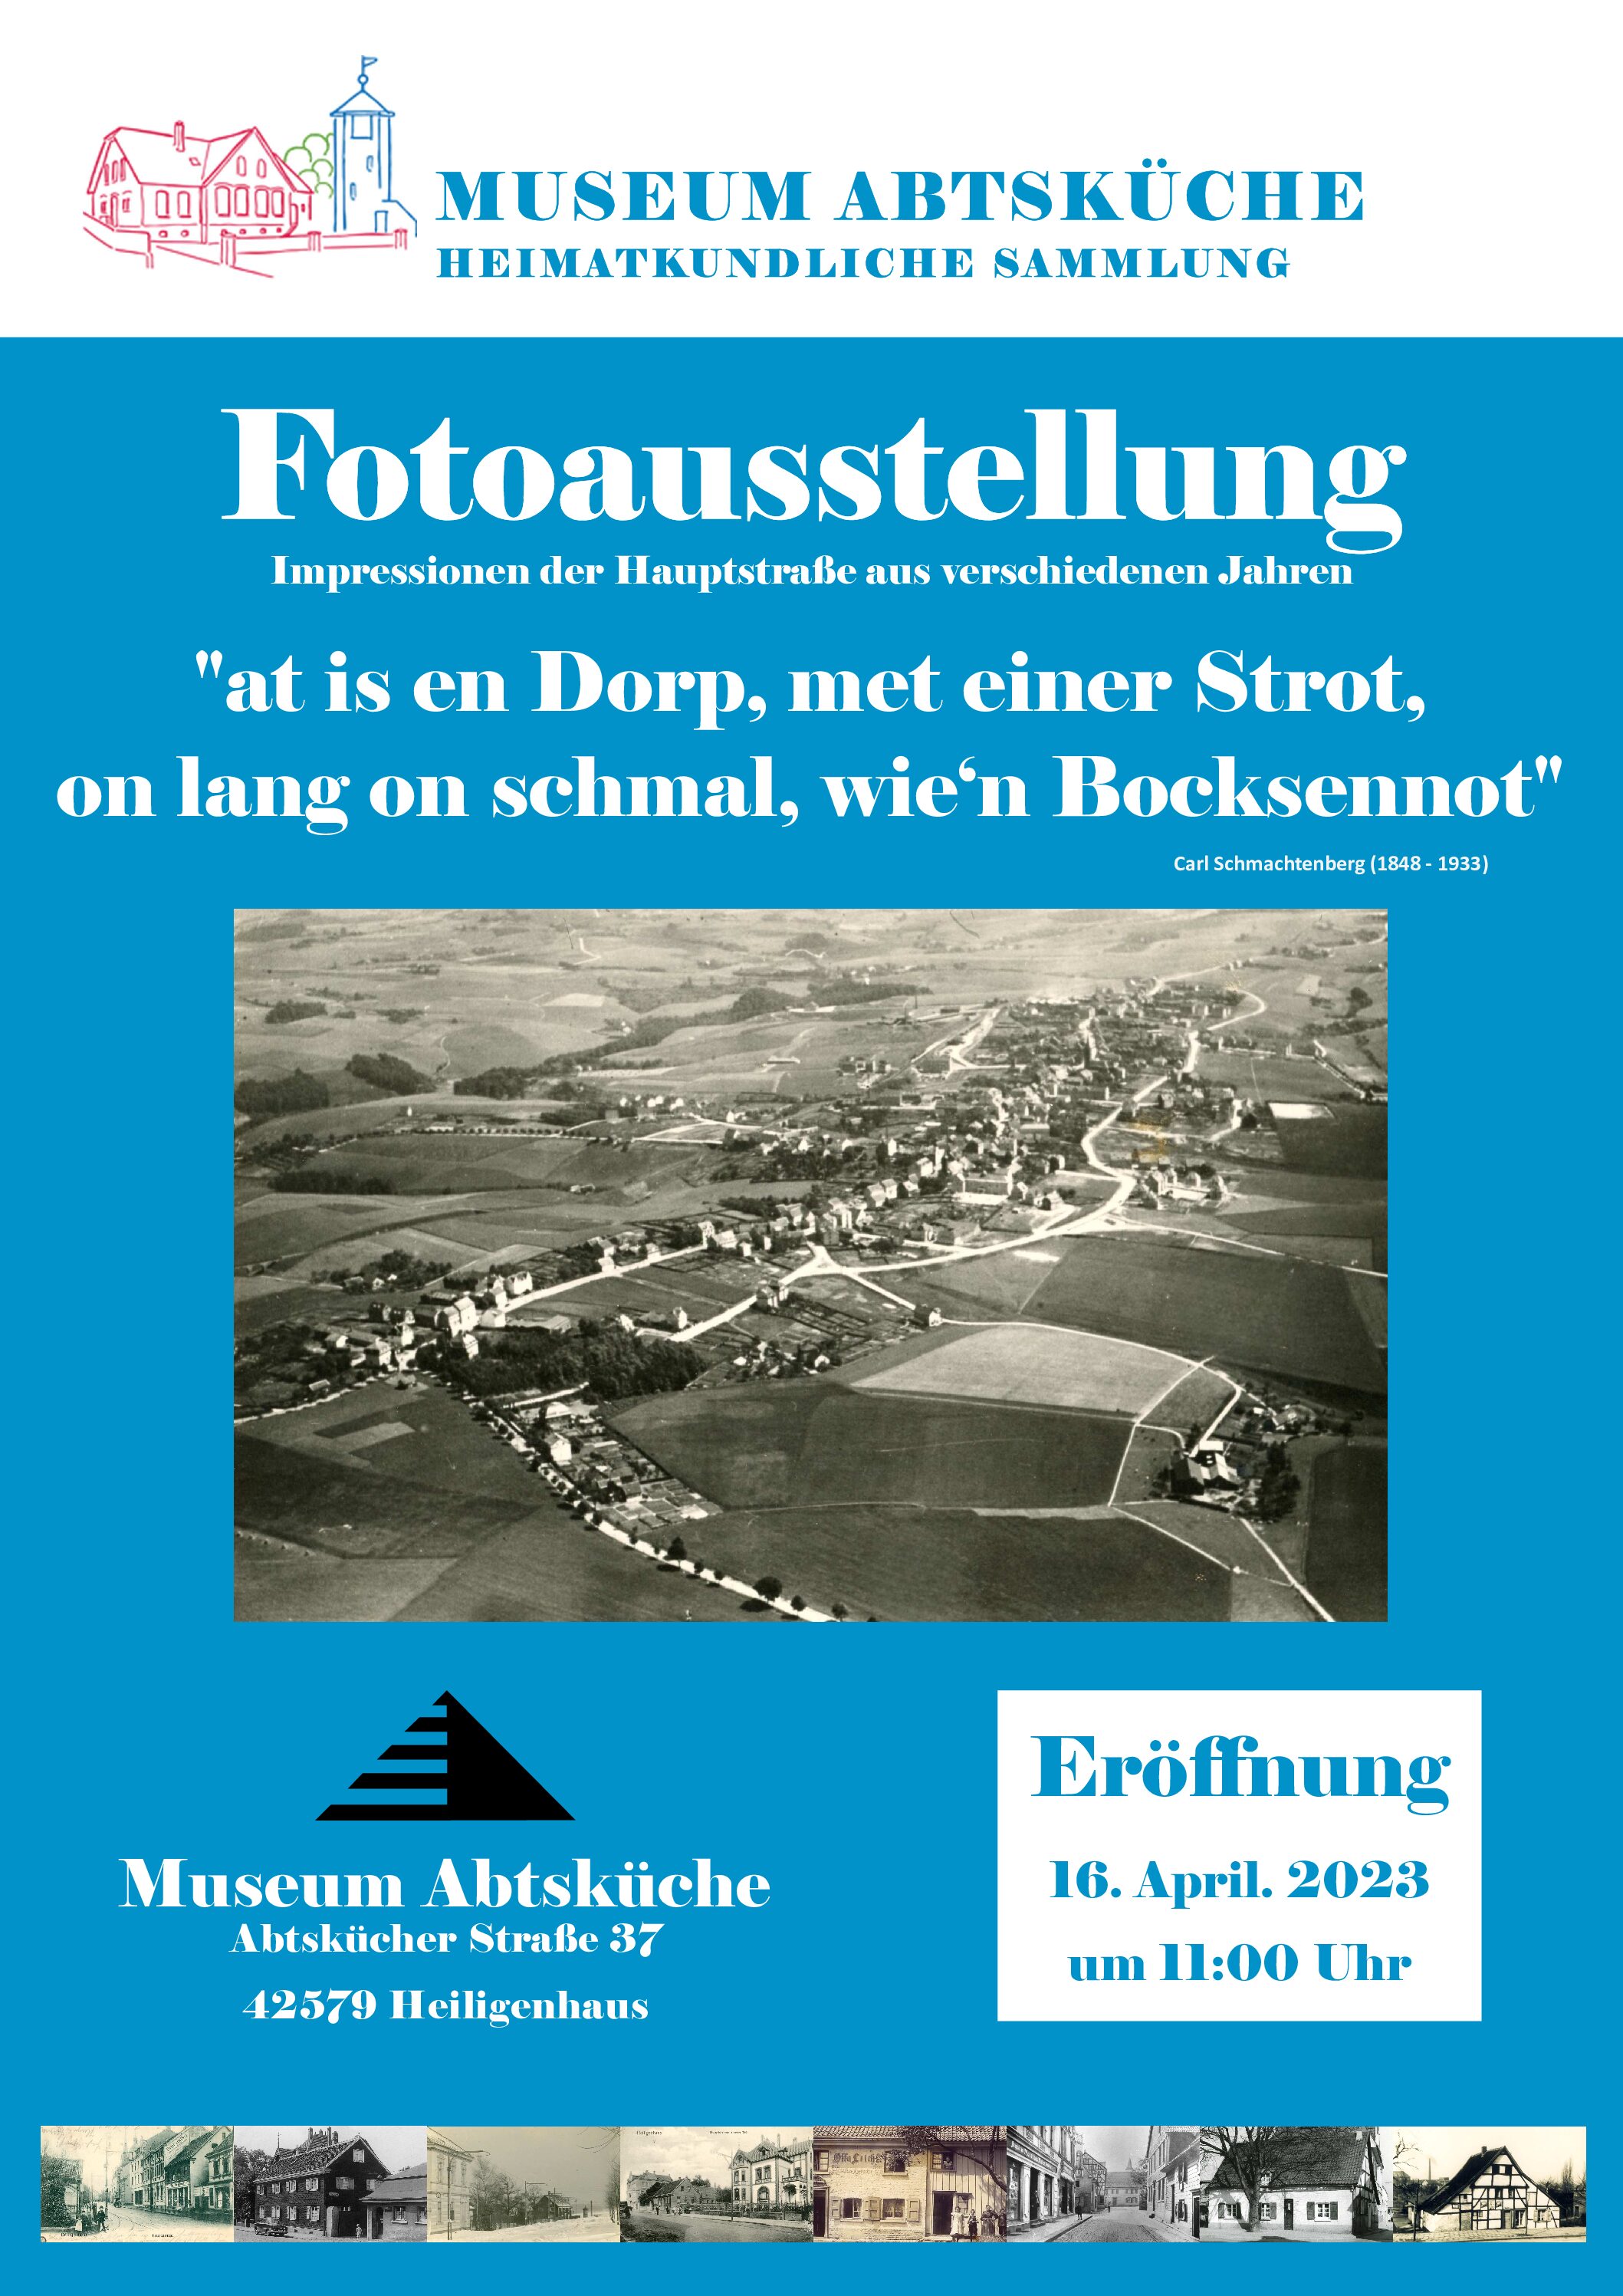 Fotoausstellung - "at is en Dorp, met einer Strot, on lang on schmal, wie‘n Bocksennot"